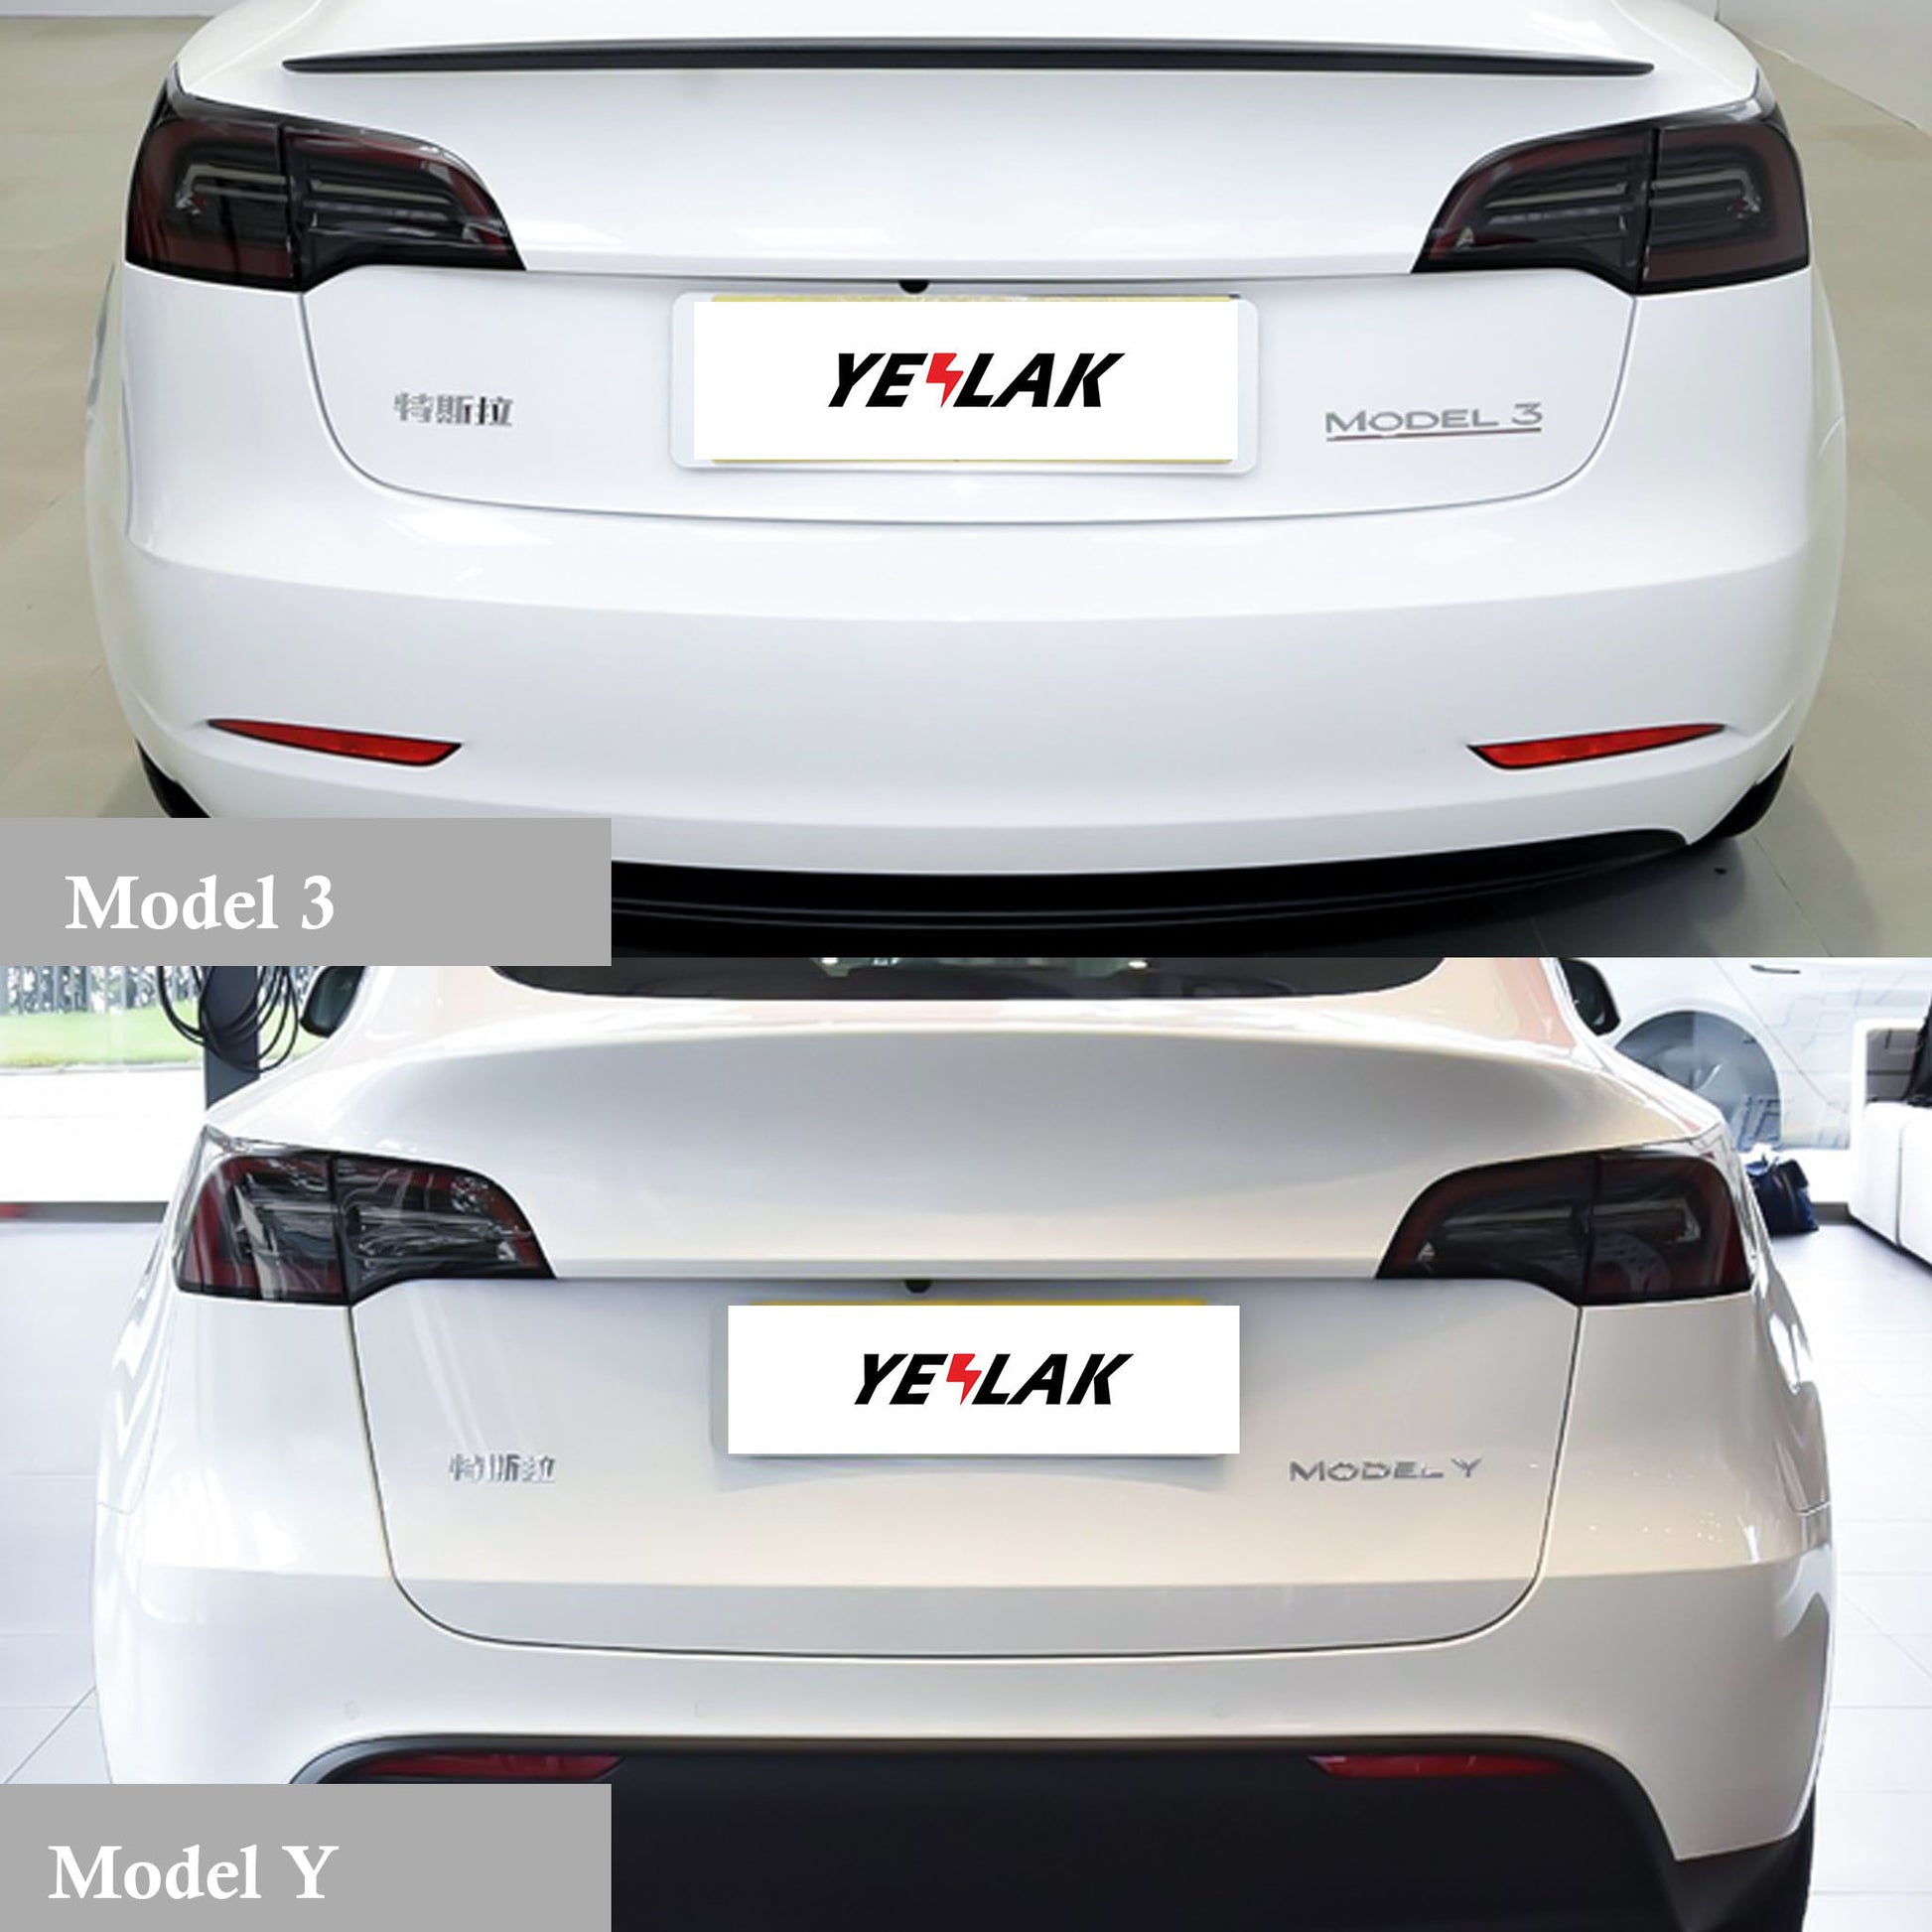 Tesla begins delivering refreshed Model 3 'Highland' in Austria